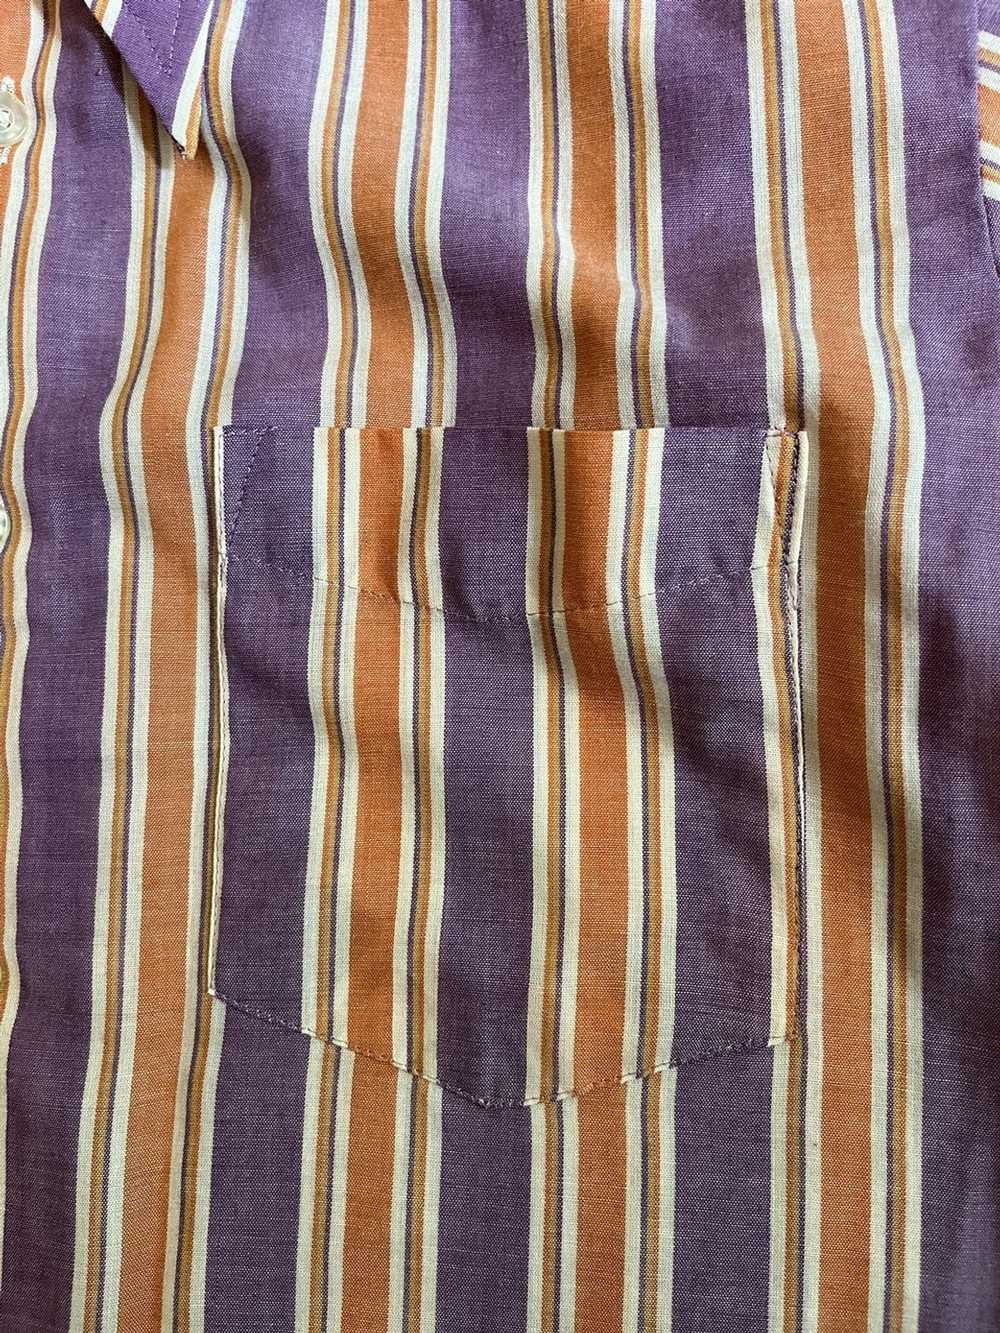 Vintage Vintage 1960s striped shirt - image 3